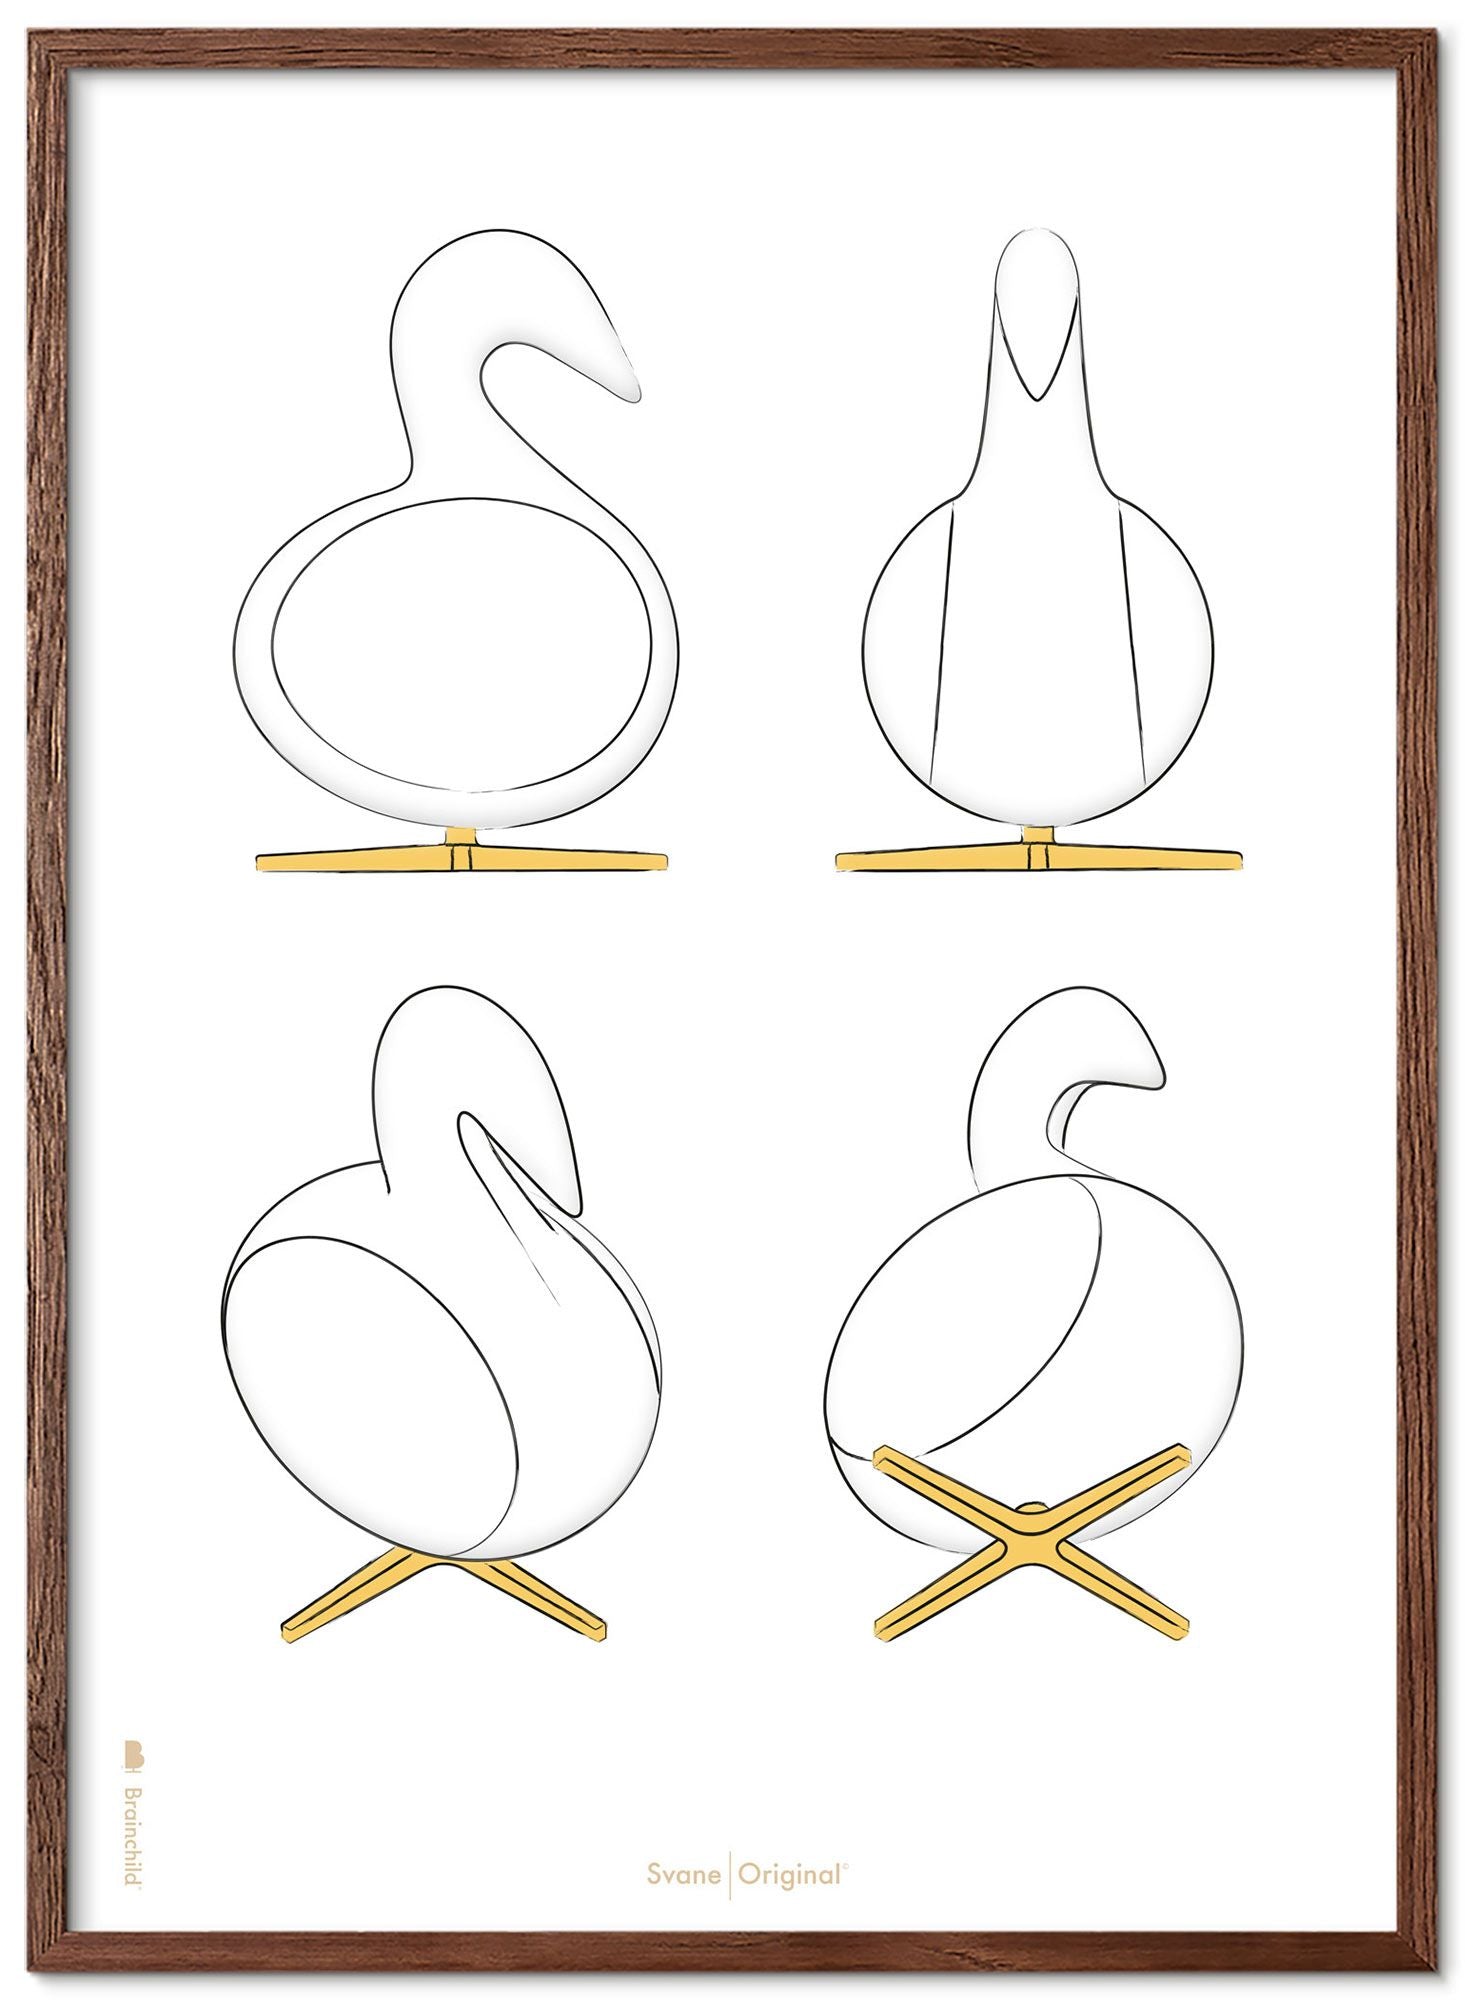 Marco de póster de bocetos de diseño de Swan de creación de madera oscura 70x100 cm, fondo blanco